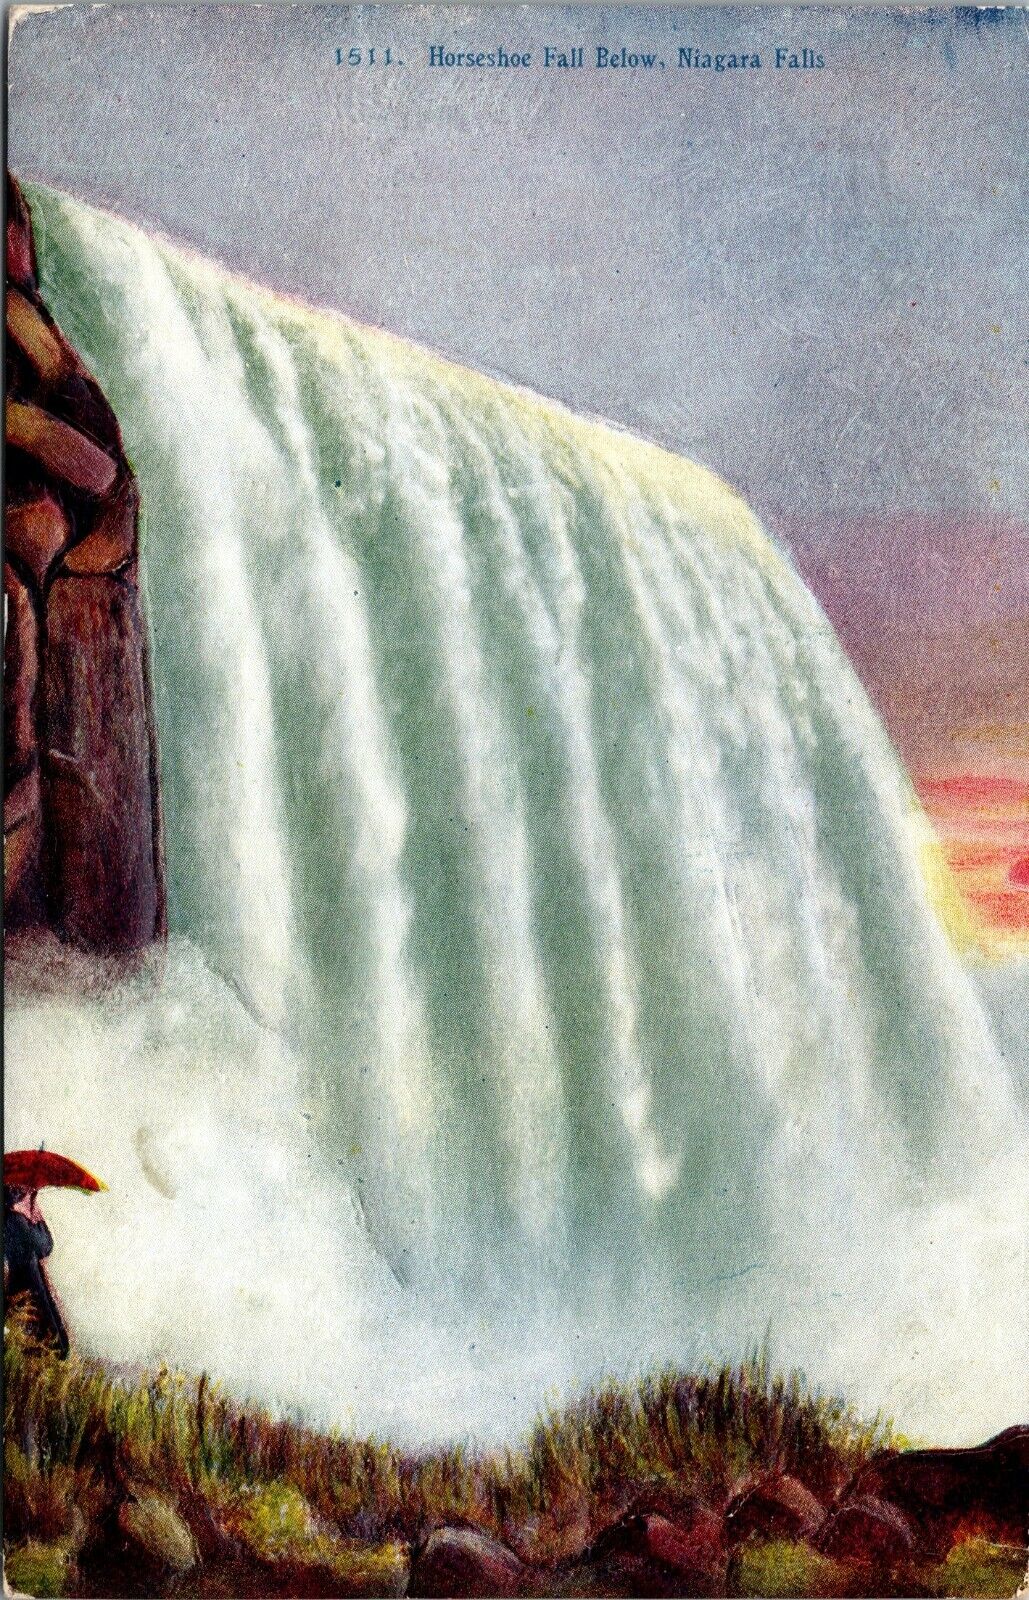 Embossed Niagara Falls Horseshoe Fall Below Postcard POSTED